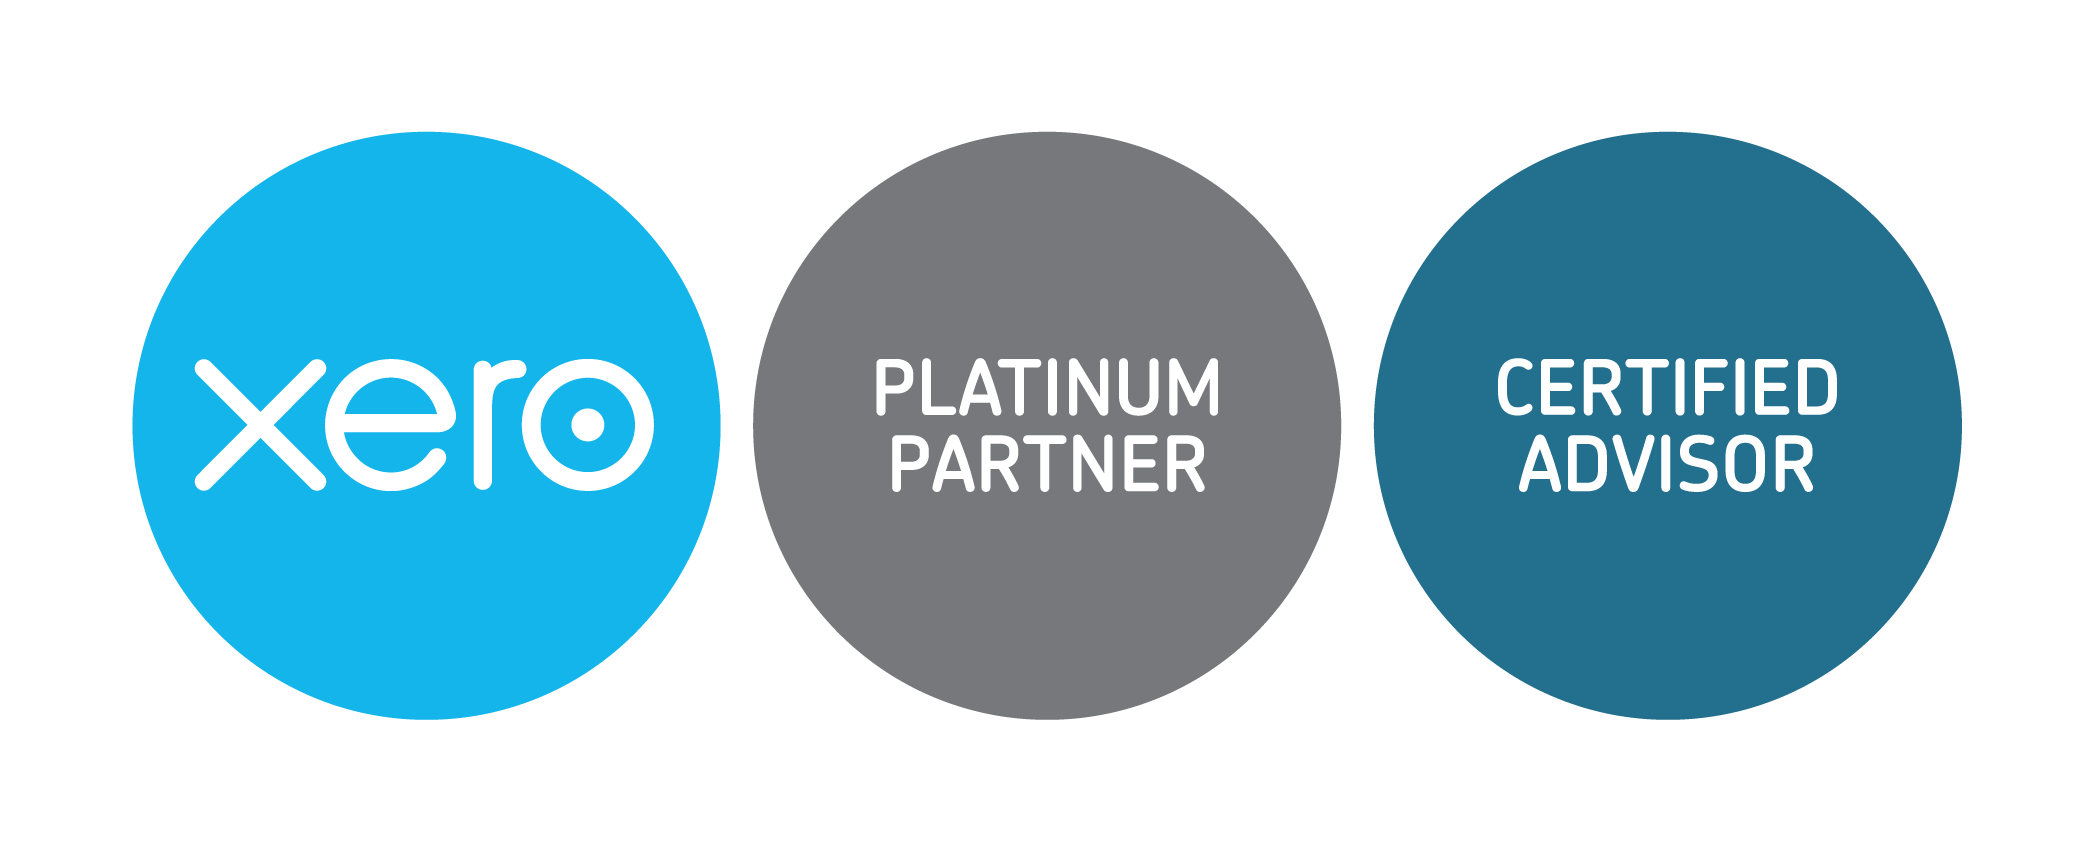 xero platinum partner cert advisor badges RGB